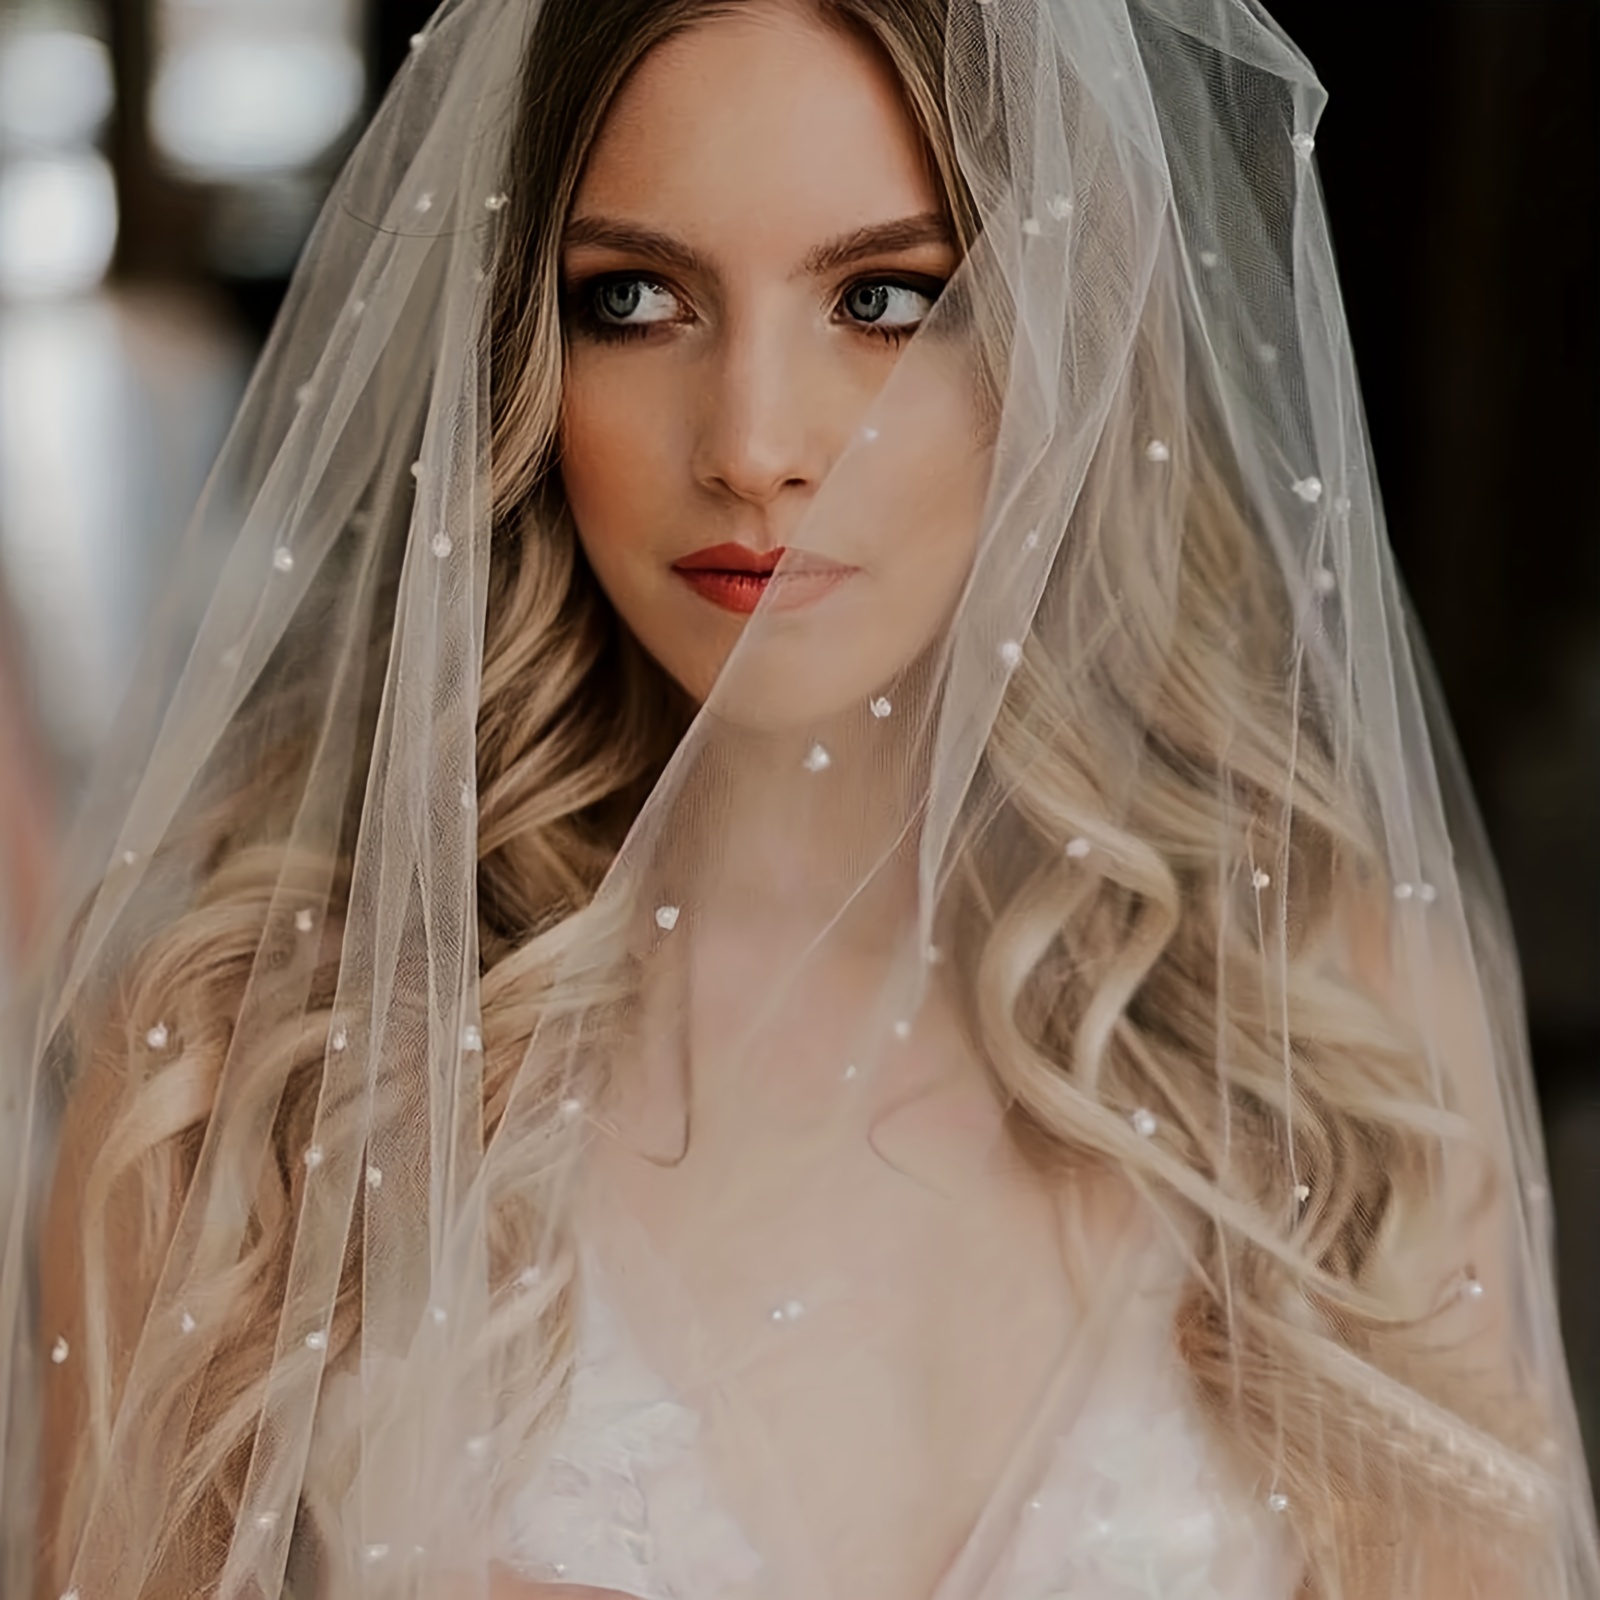 1pc Wedding Season White Bridal Veil, Bachelorette Party Hair